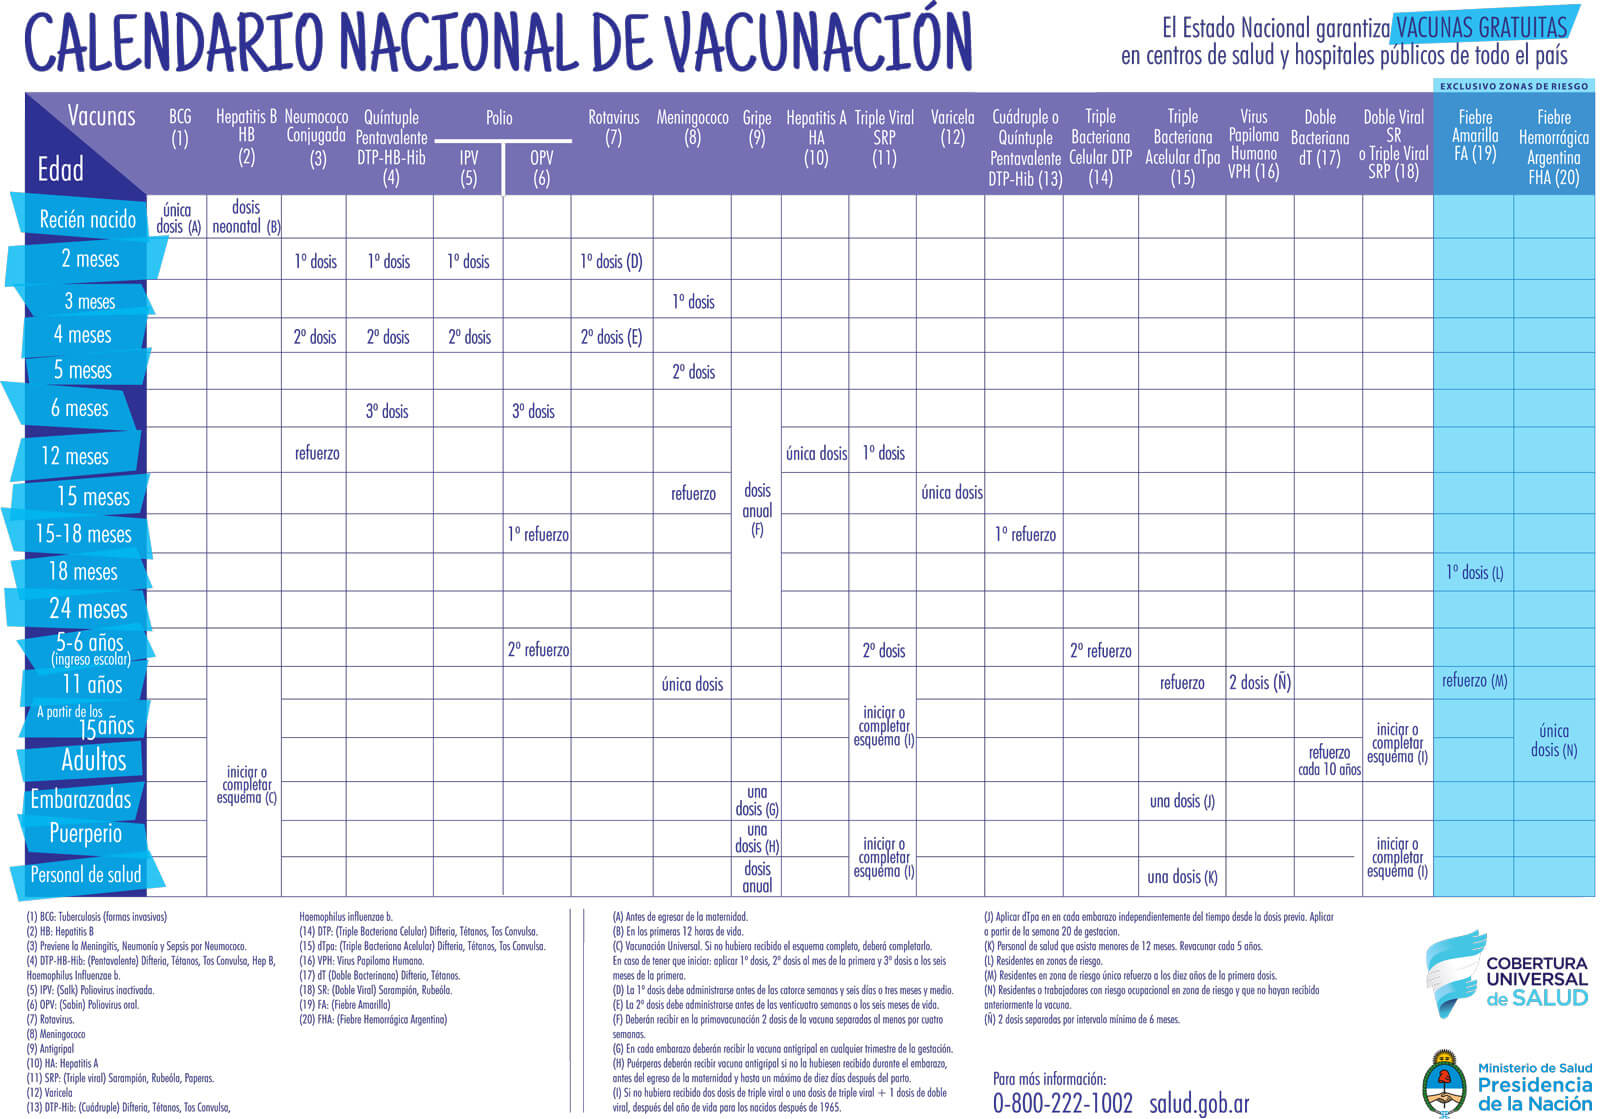 Carnet de Vacunacion